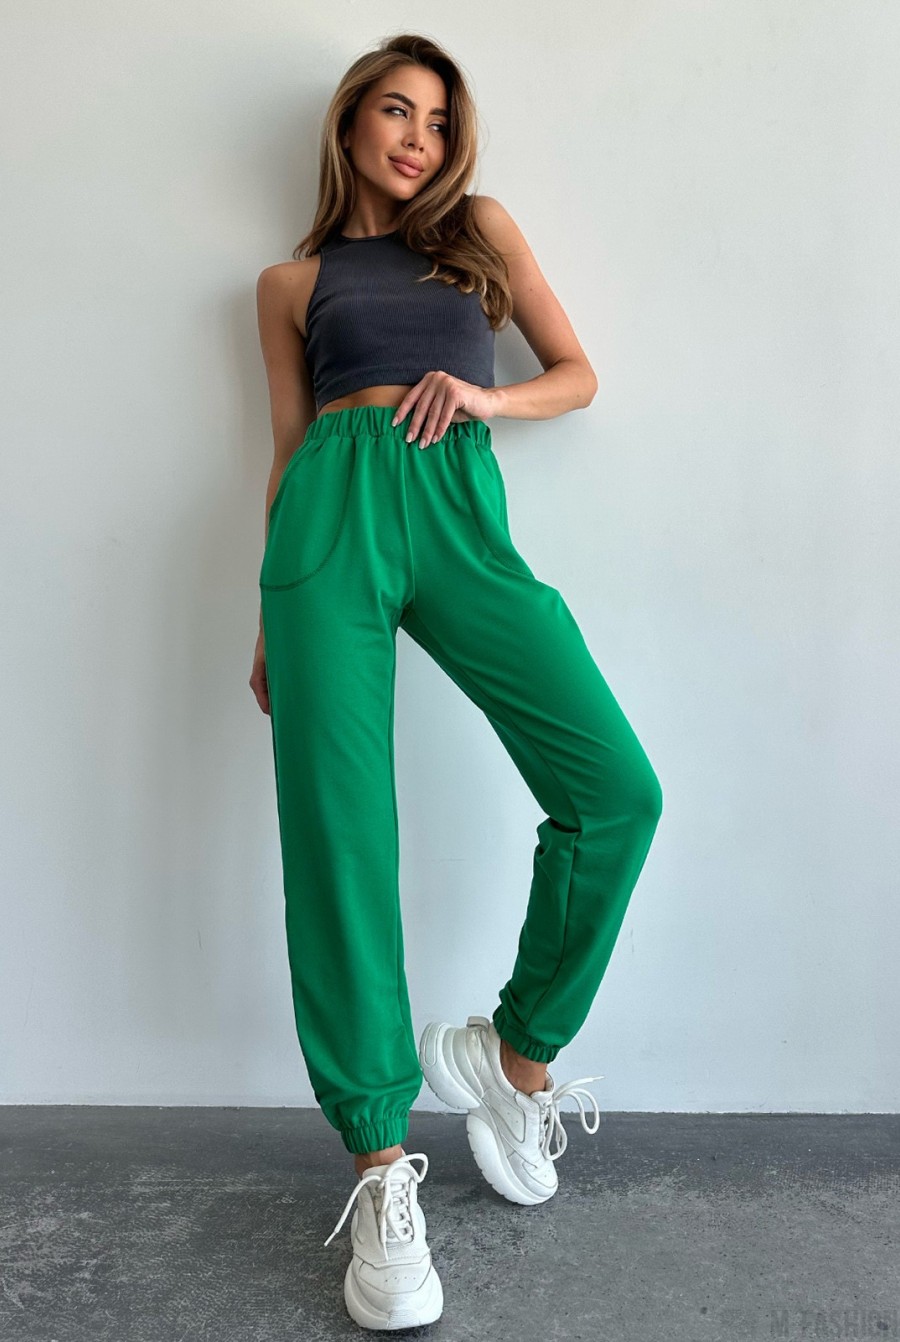 Зеленые трикотажные спортивные штаны модели джоггер  - Фото 1